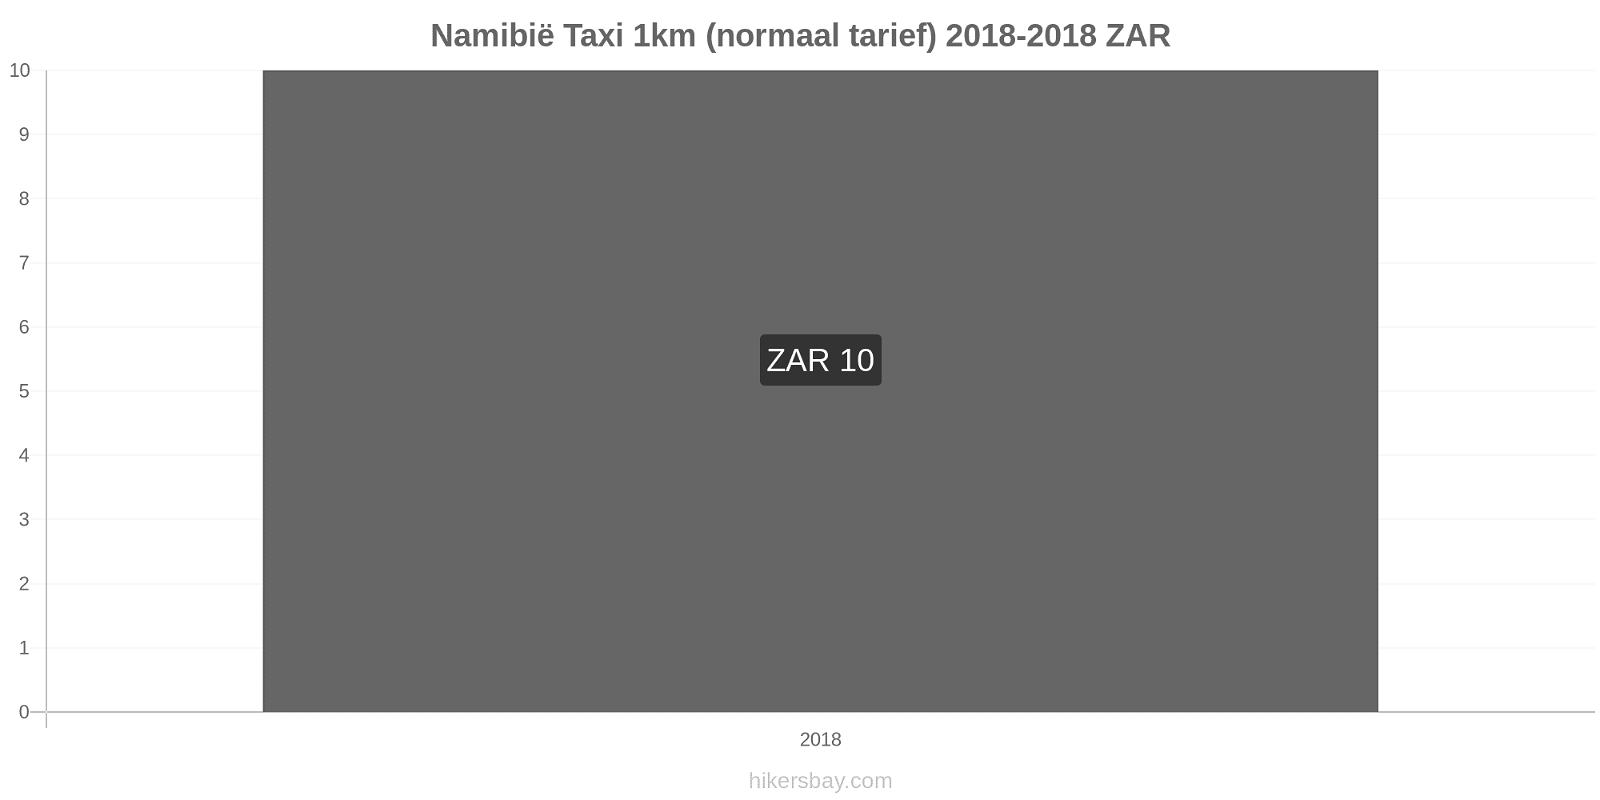 Namibië prijswijzigingen Taxi 1km (normaal tarief) hikersbay.com